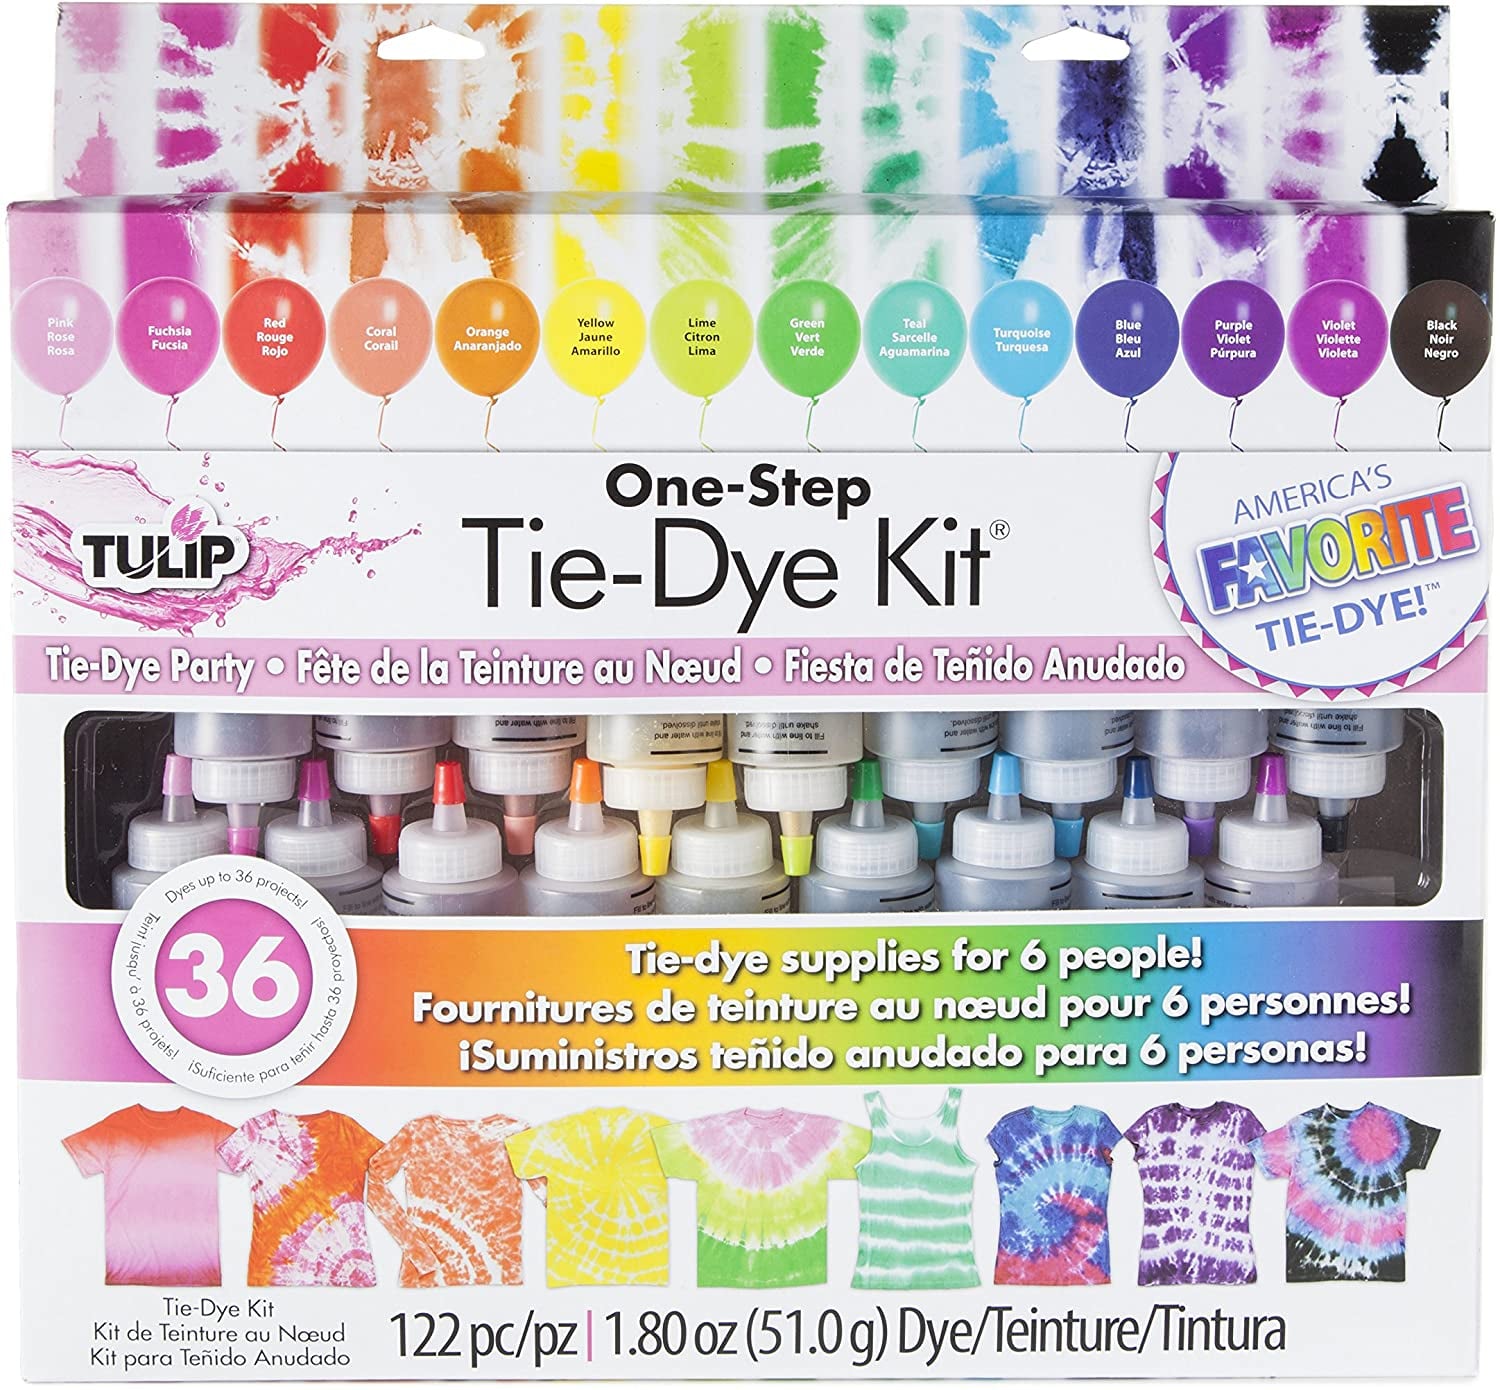 The Best Tie-Dye Kits on